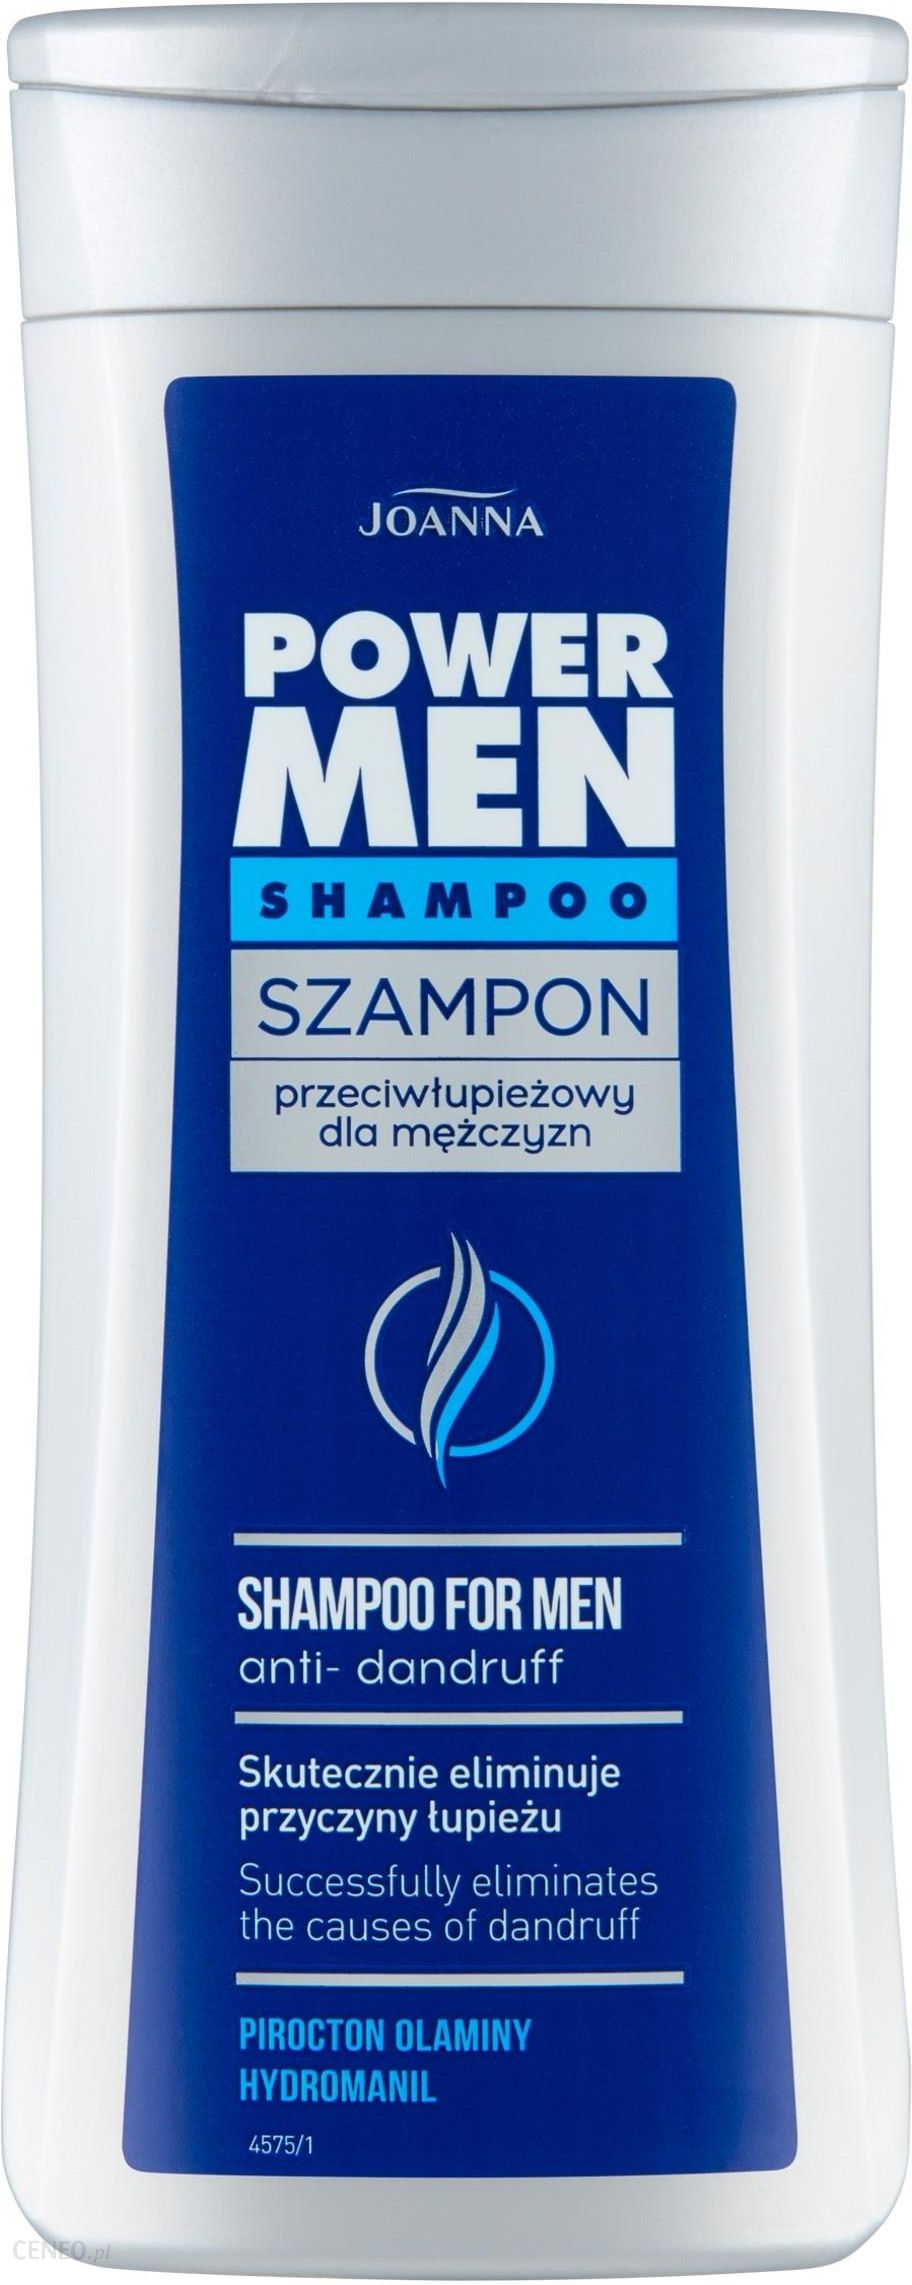 szampon przeciwłu ieowy dla mezczyzn